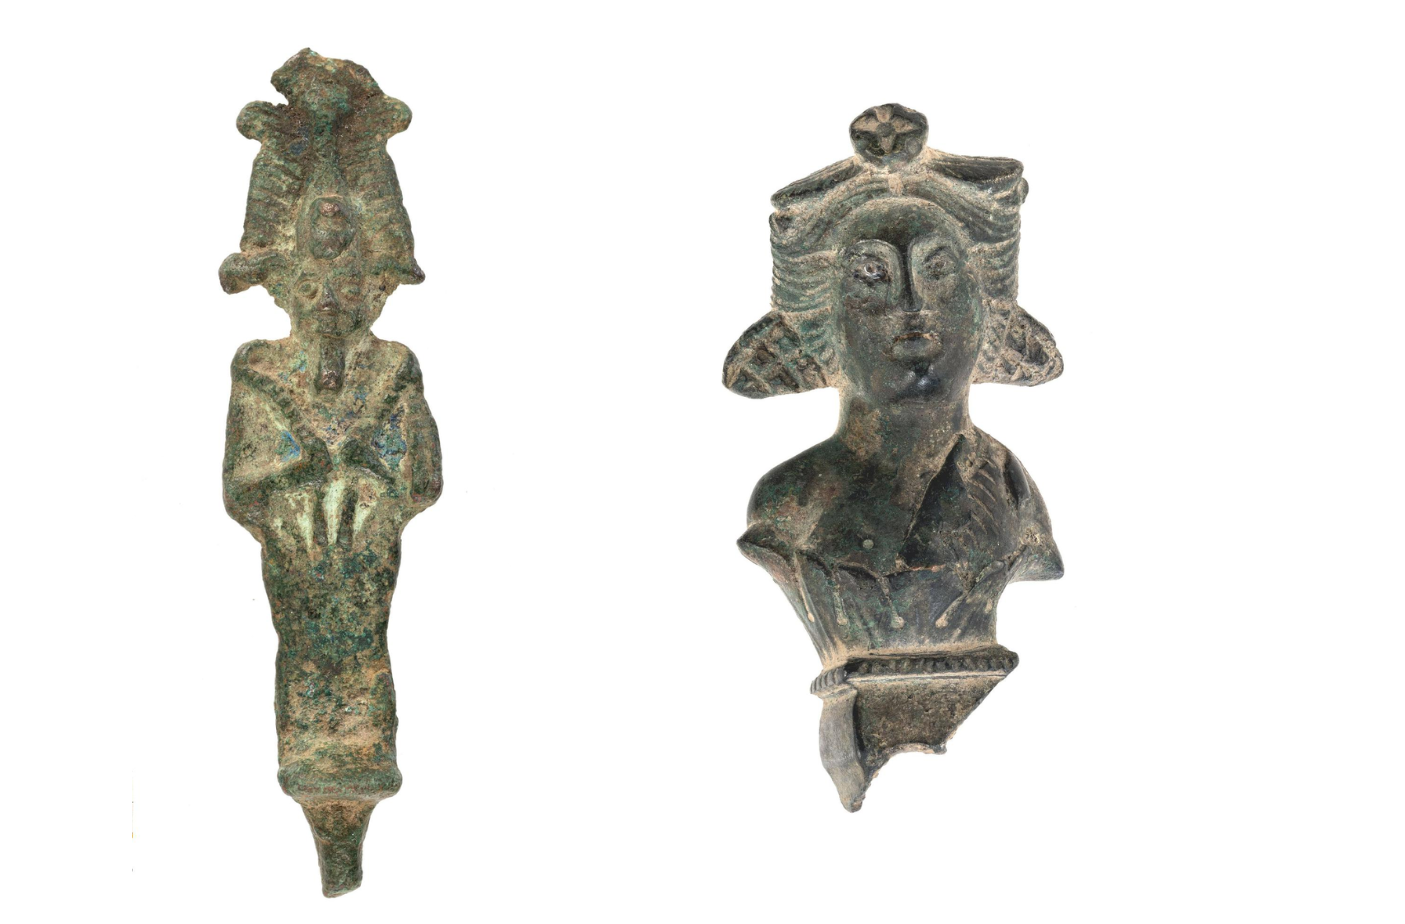 „Dziewiętnastowieczne” artefakty znalezione w Polsce pochodzą w rzeczywistości ze starożytnego Egiptu i Rzymu